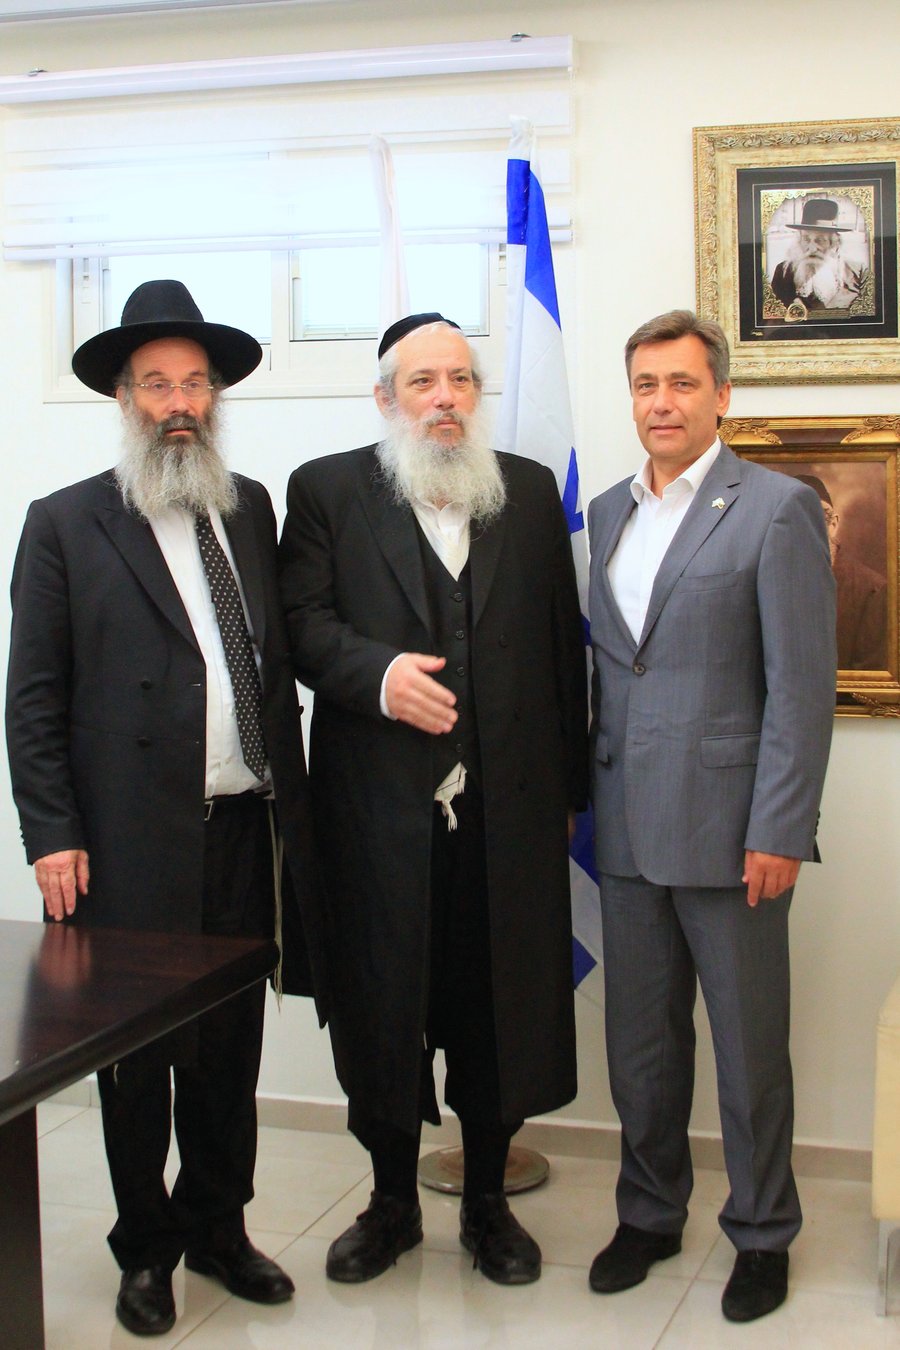 שגריר ליטא בישראל ביקר בישיבת פוניבז'